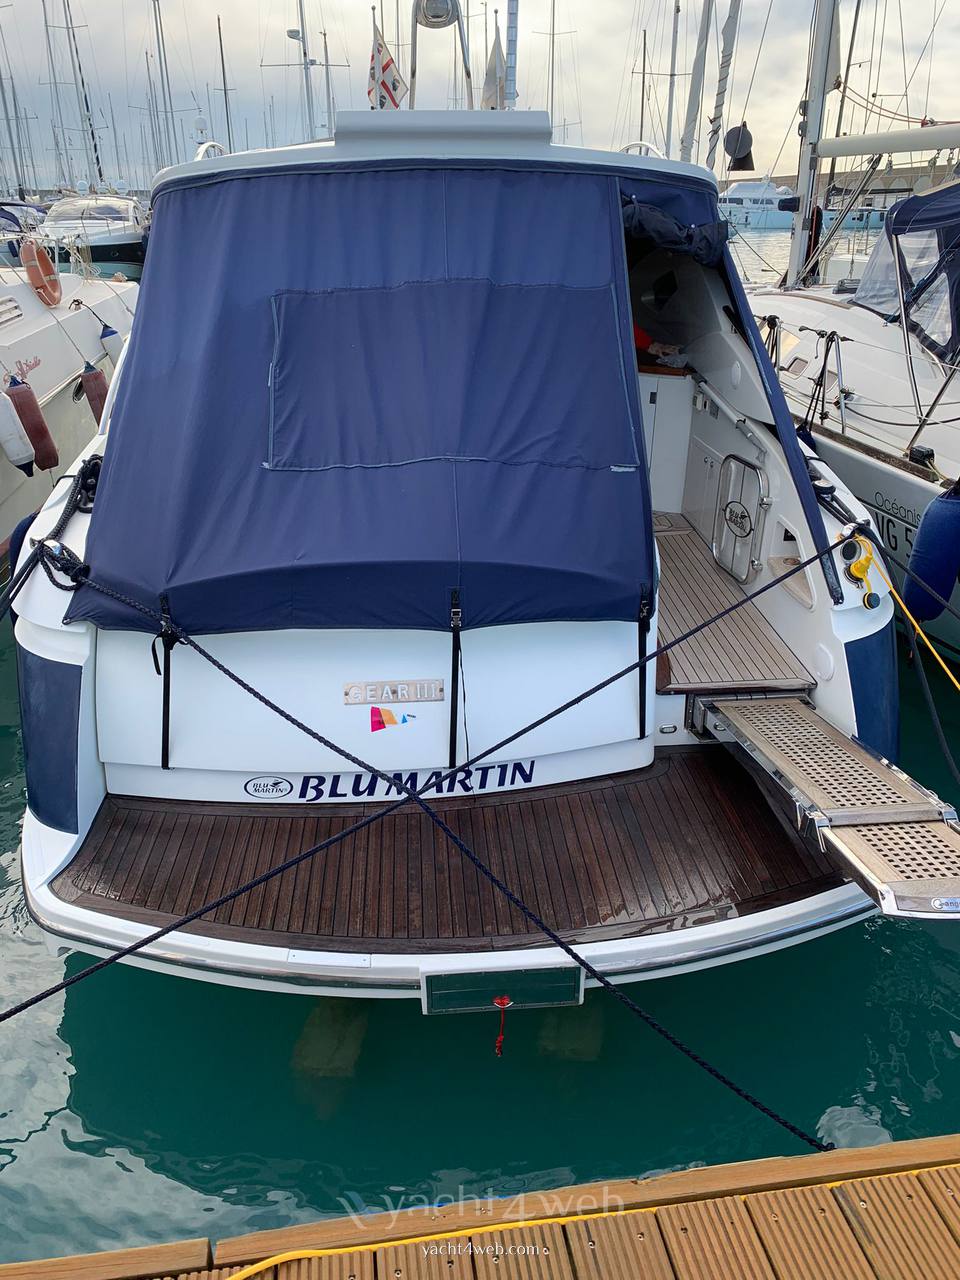 BLU MARTIN 13,50 sun top ht Barca a motore usata in vendita